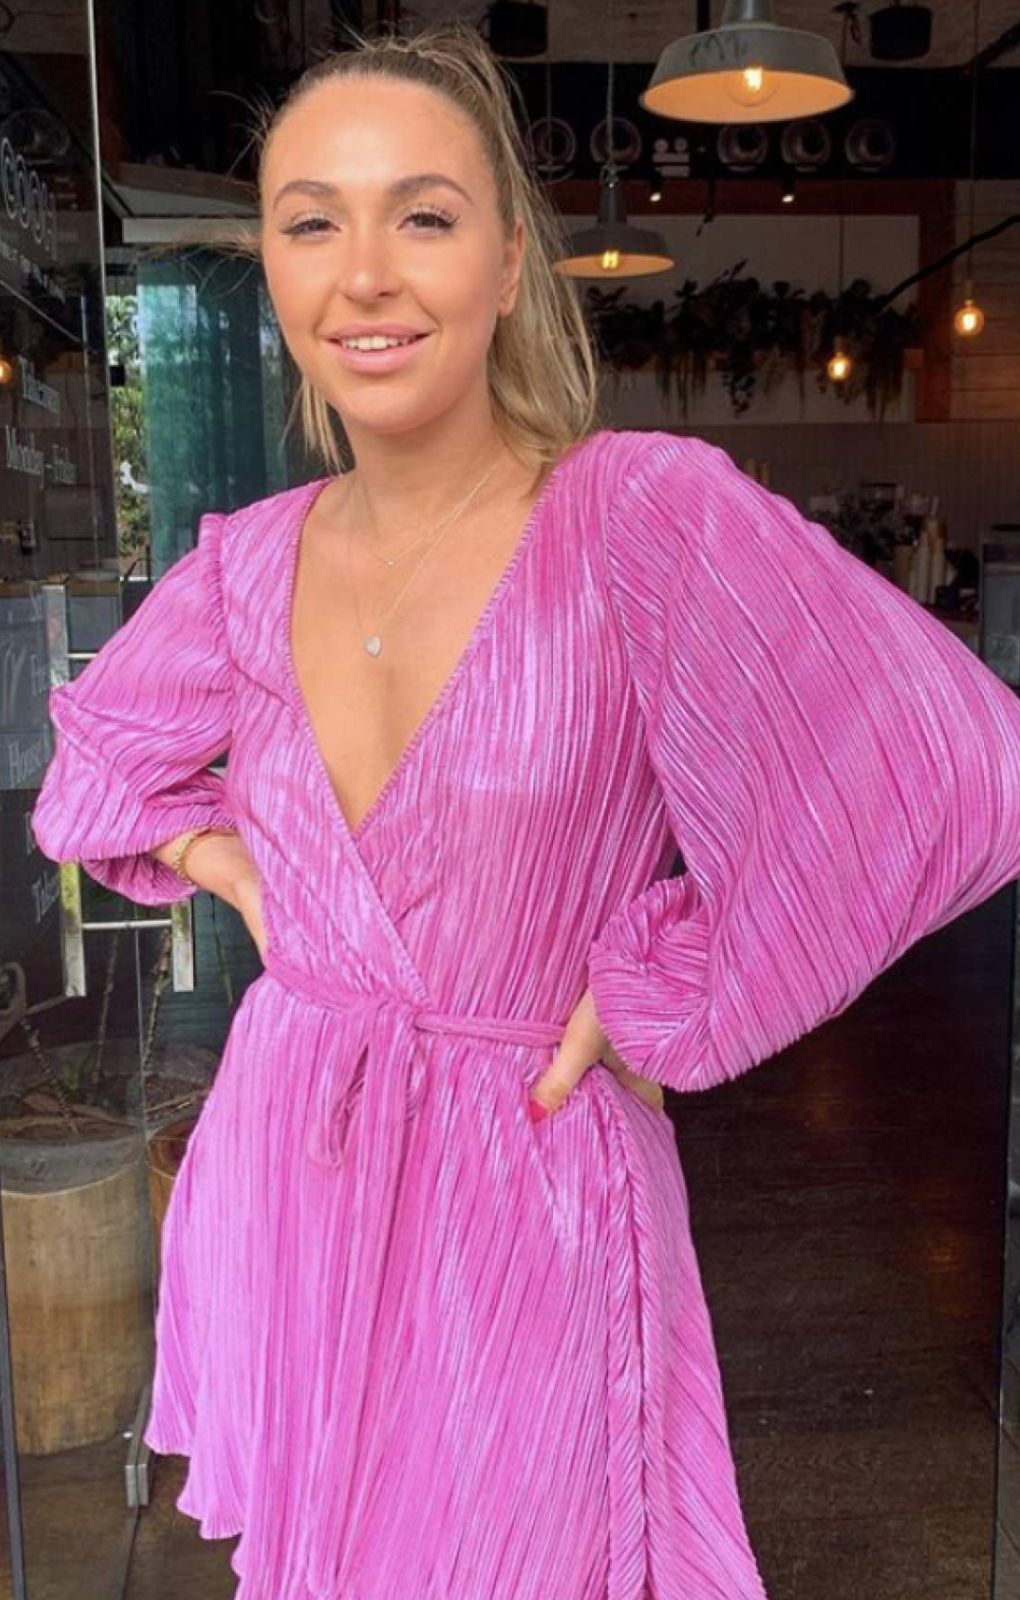 Bardot Pink Shine Bellissa Pleat Dress product image